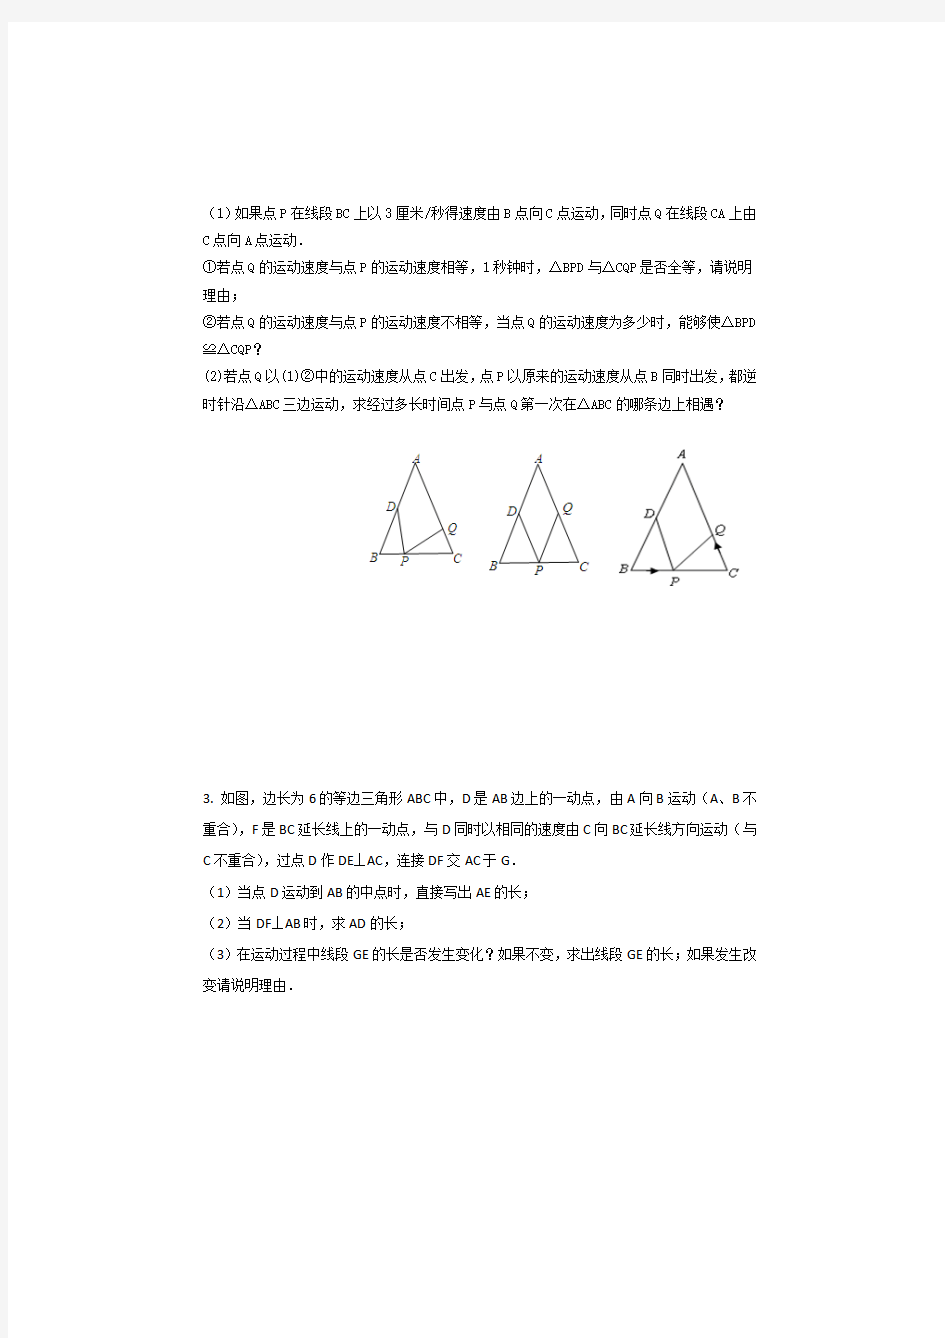 三角形全等动点问题,全等三角形动点压轴题典型例题及答案解析